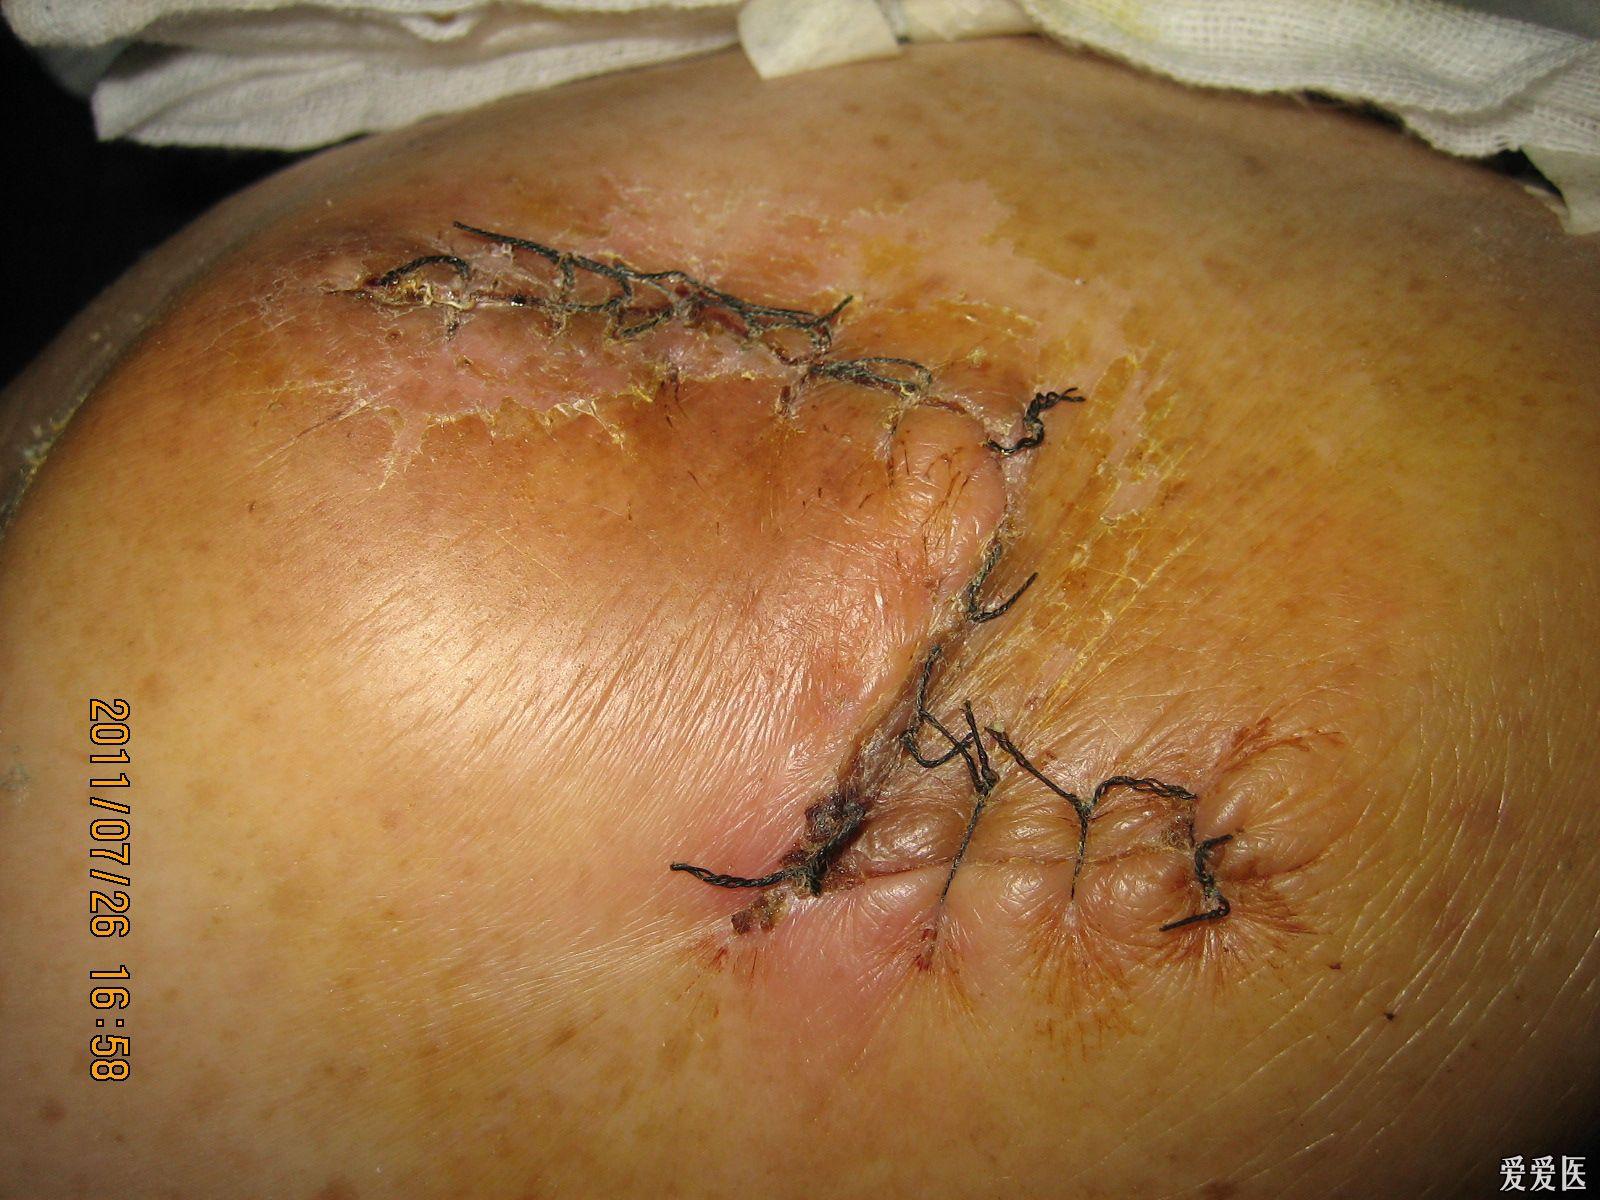 近期做的菱形改良皮瓣在治疗褥疮中的应用